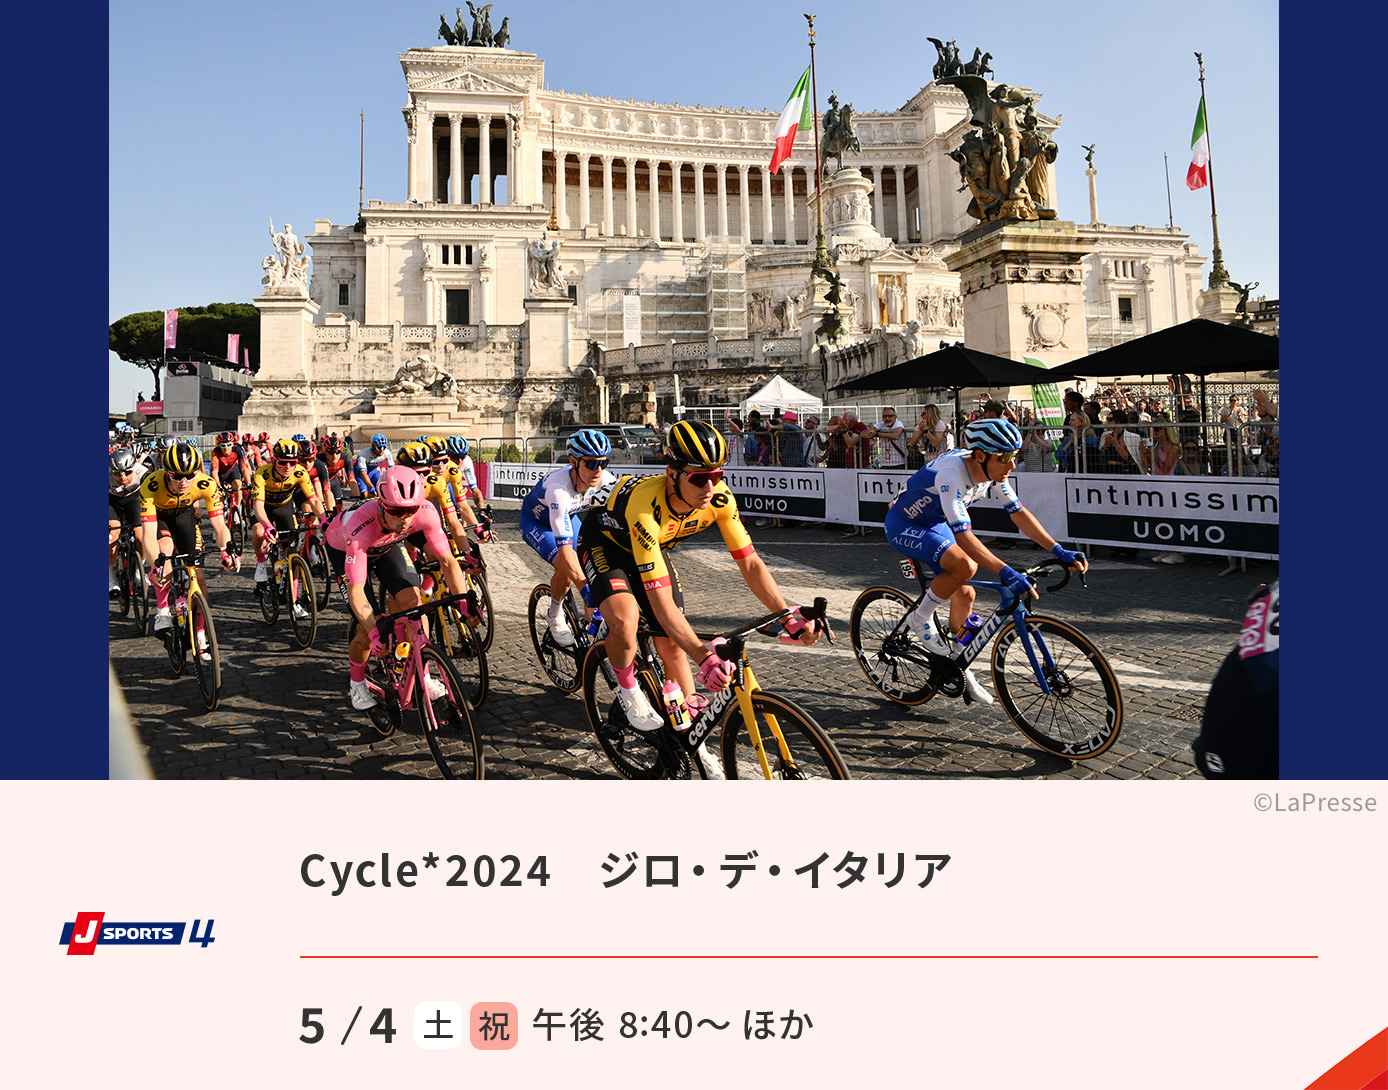 cycle*2024 ジロ・デ・イタリア